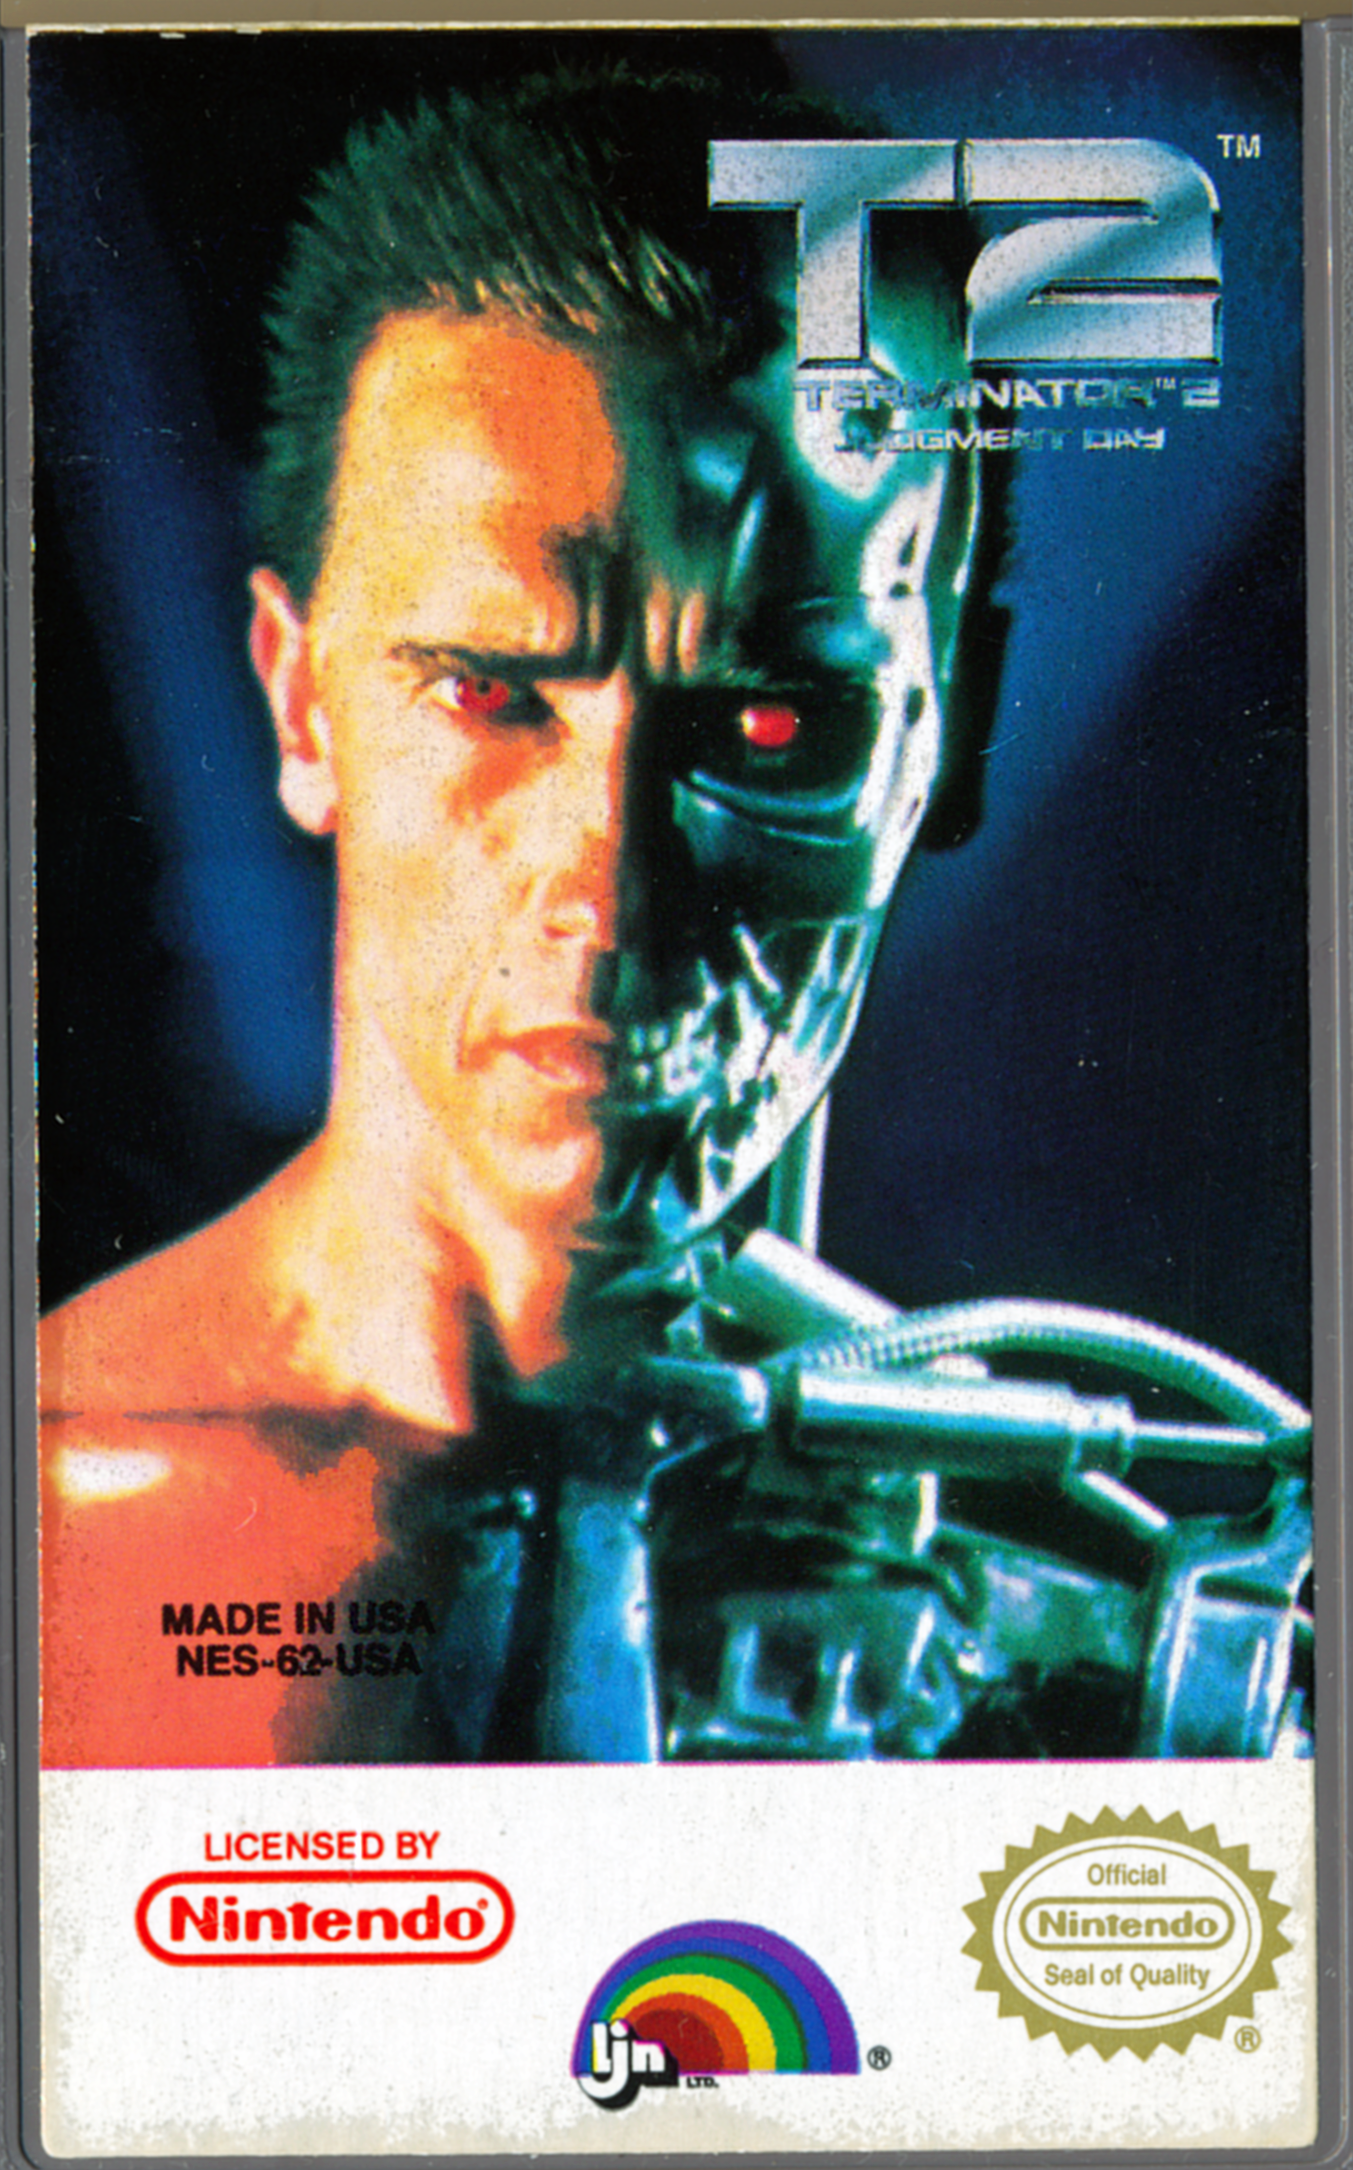 Terminator judgment day игра. Terminator 2 Judgment Day NES обложка. Terminator 2 NES картридж. Обложки игр NES Terminator 2. T2: Terminator 2 Judgment Day игра.